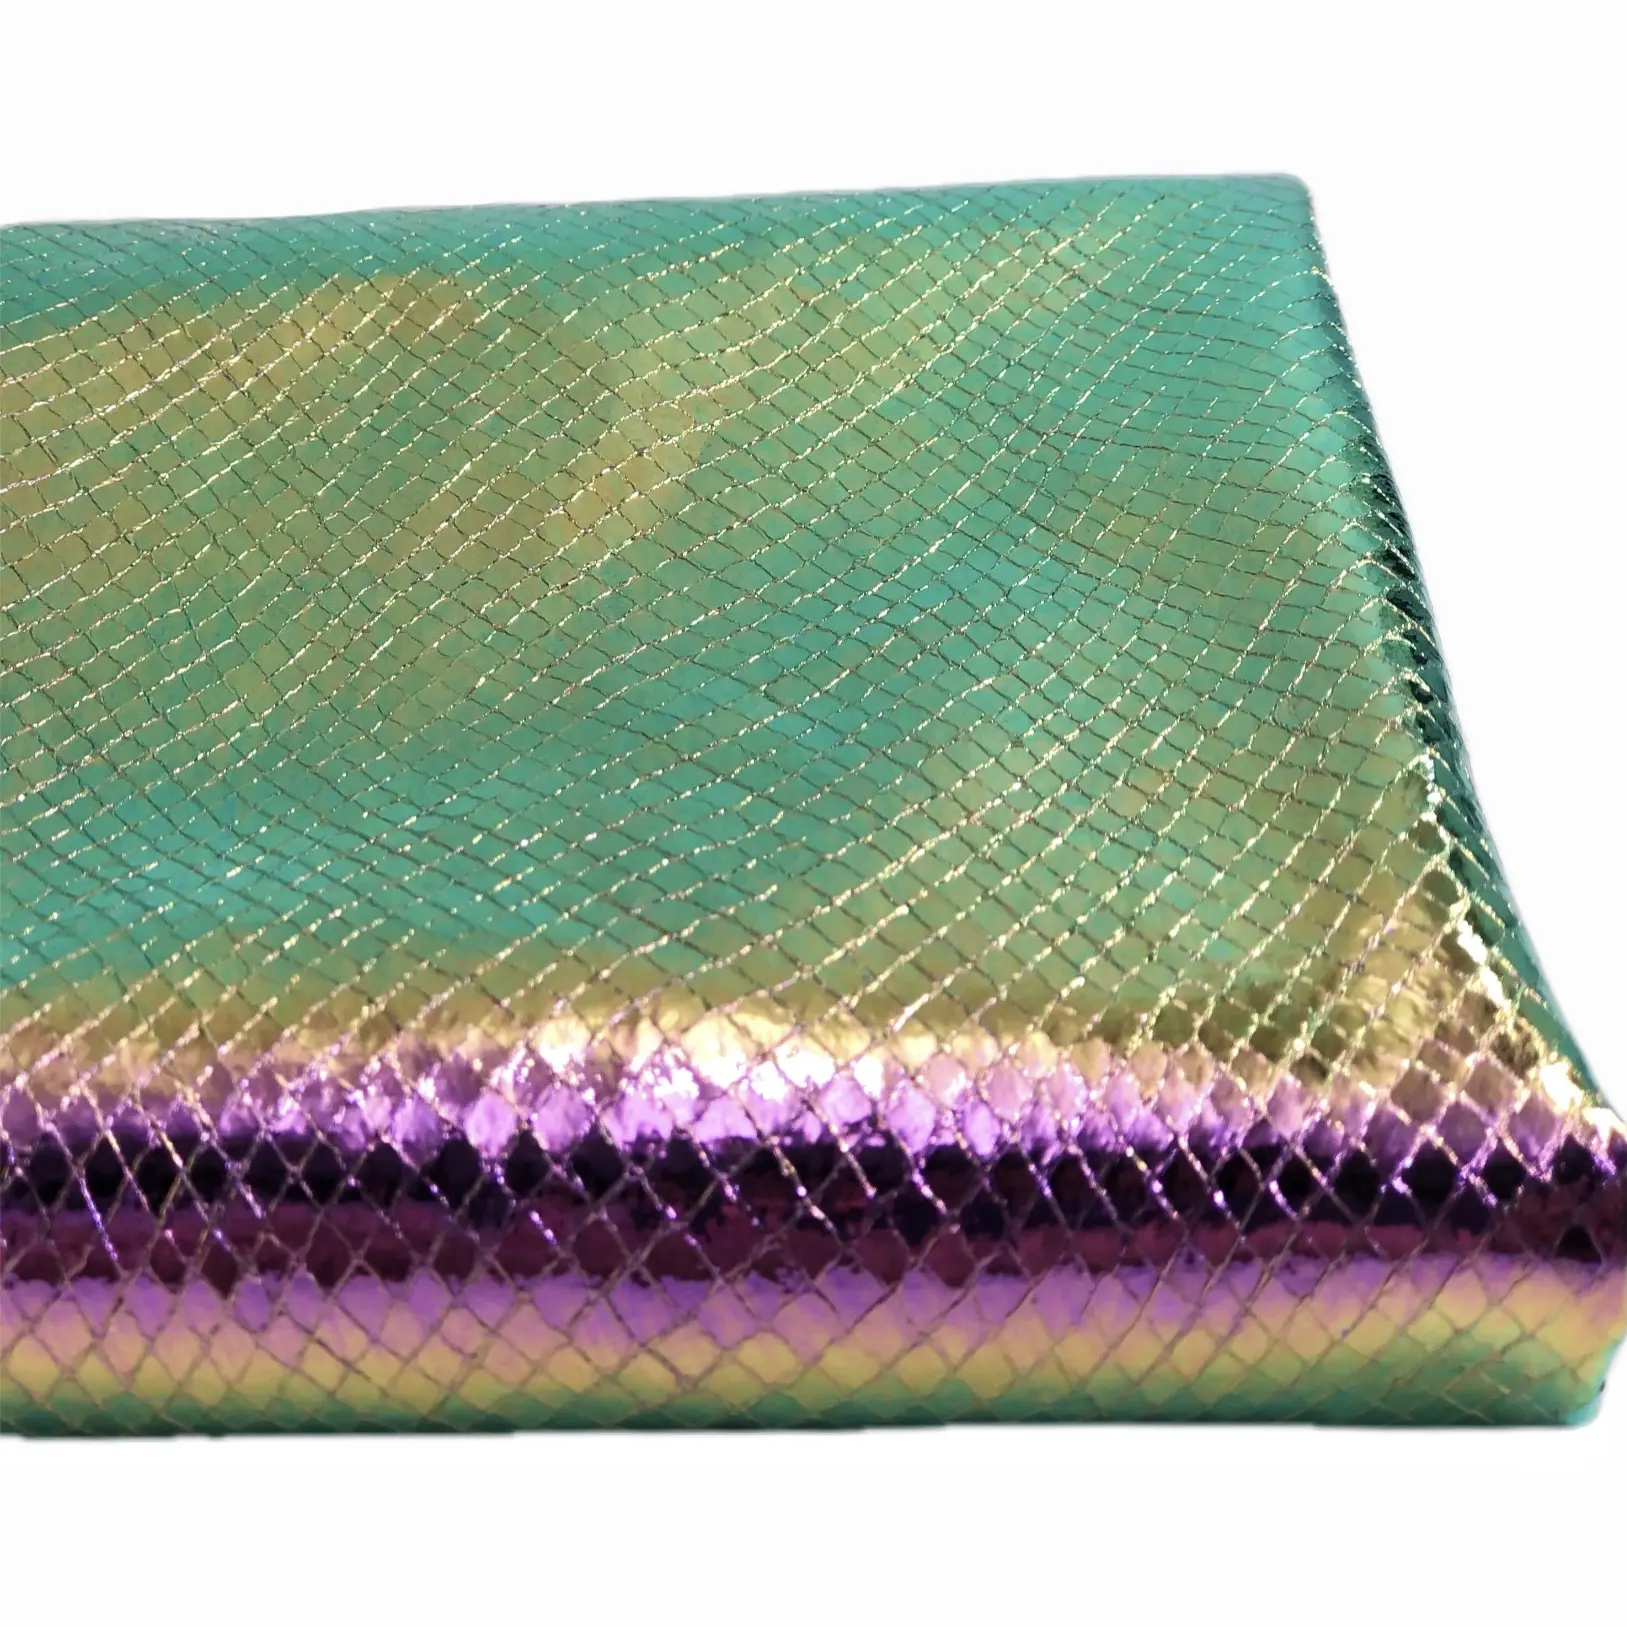 녹색 및 보라색 홀로그램 뱀 스케일 패턴 합성 직물 가죽 가방 신발 장식 재료